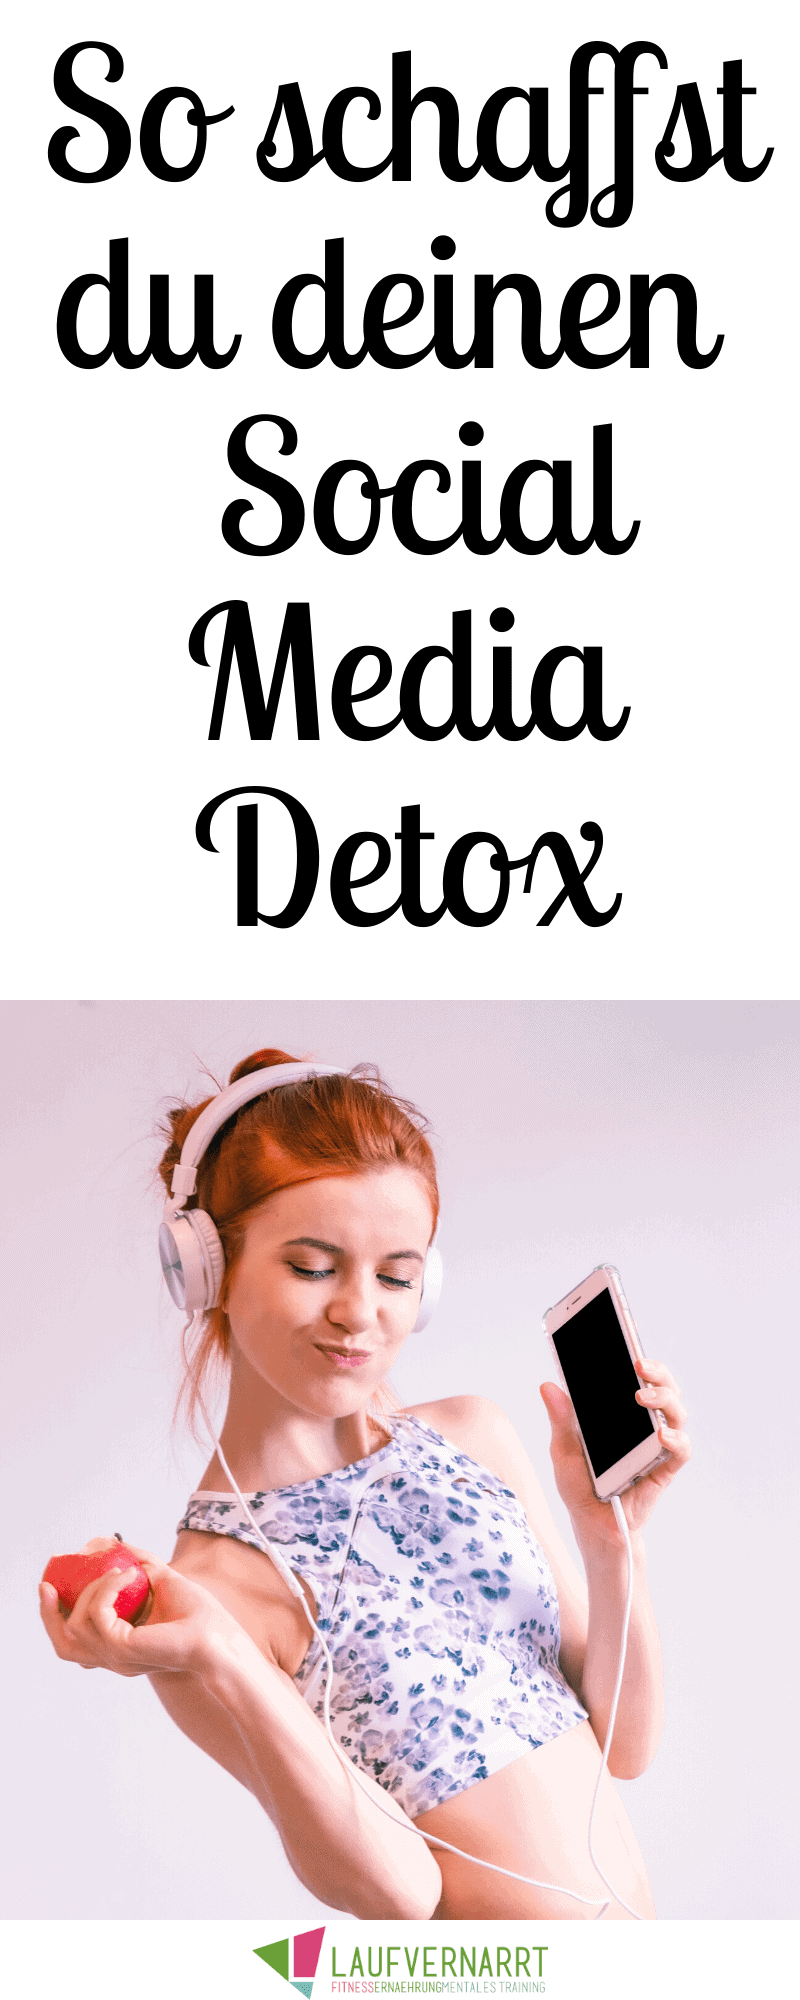 Verbringst du zu viel Zeit am Handy und auf Social Media? Warum du deine Bildschirmzeit reduzieren solltest und wie du am besten einen Social Media Detox angehst, erfährst du in diesem Artikel! #challenge #socialmediadetox #detox #socialmedia #selbstliebe